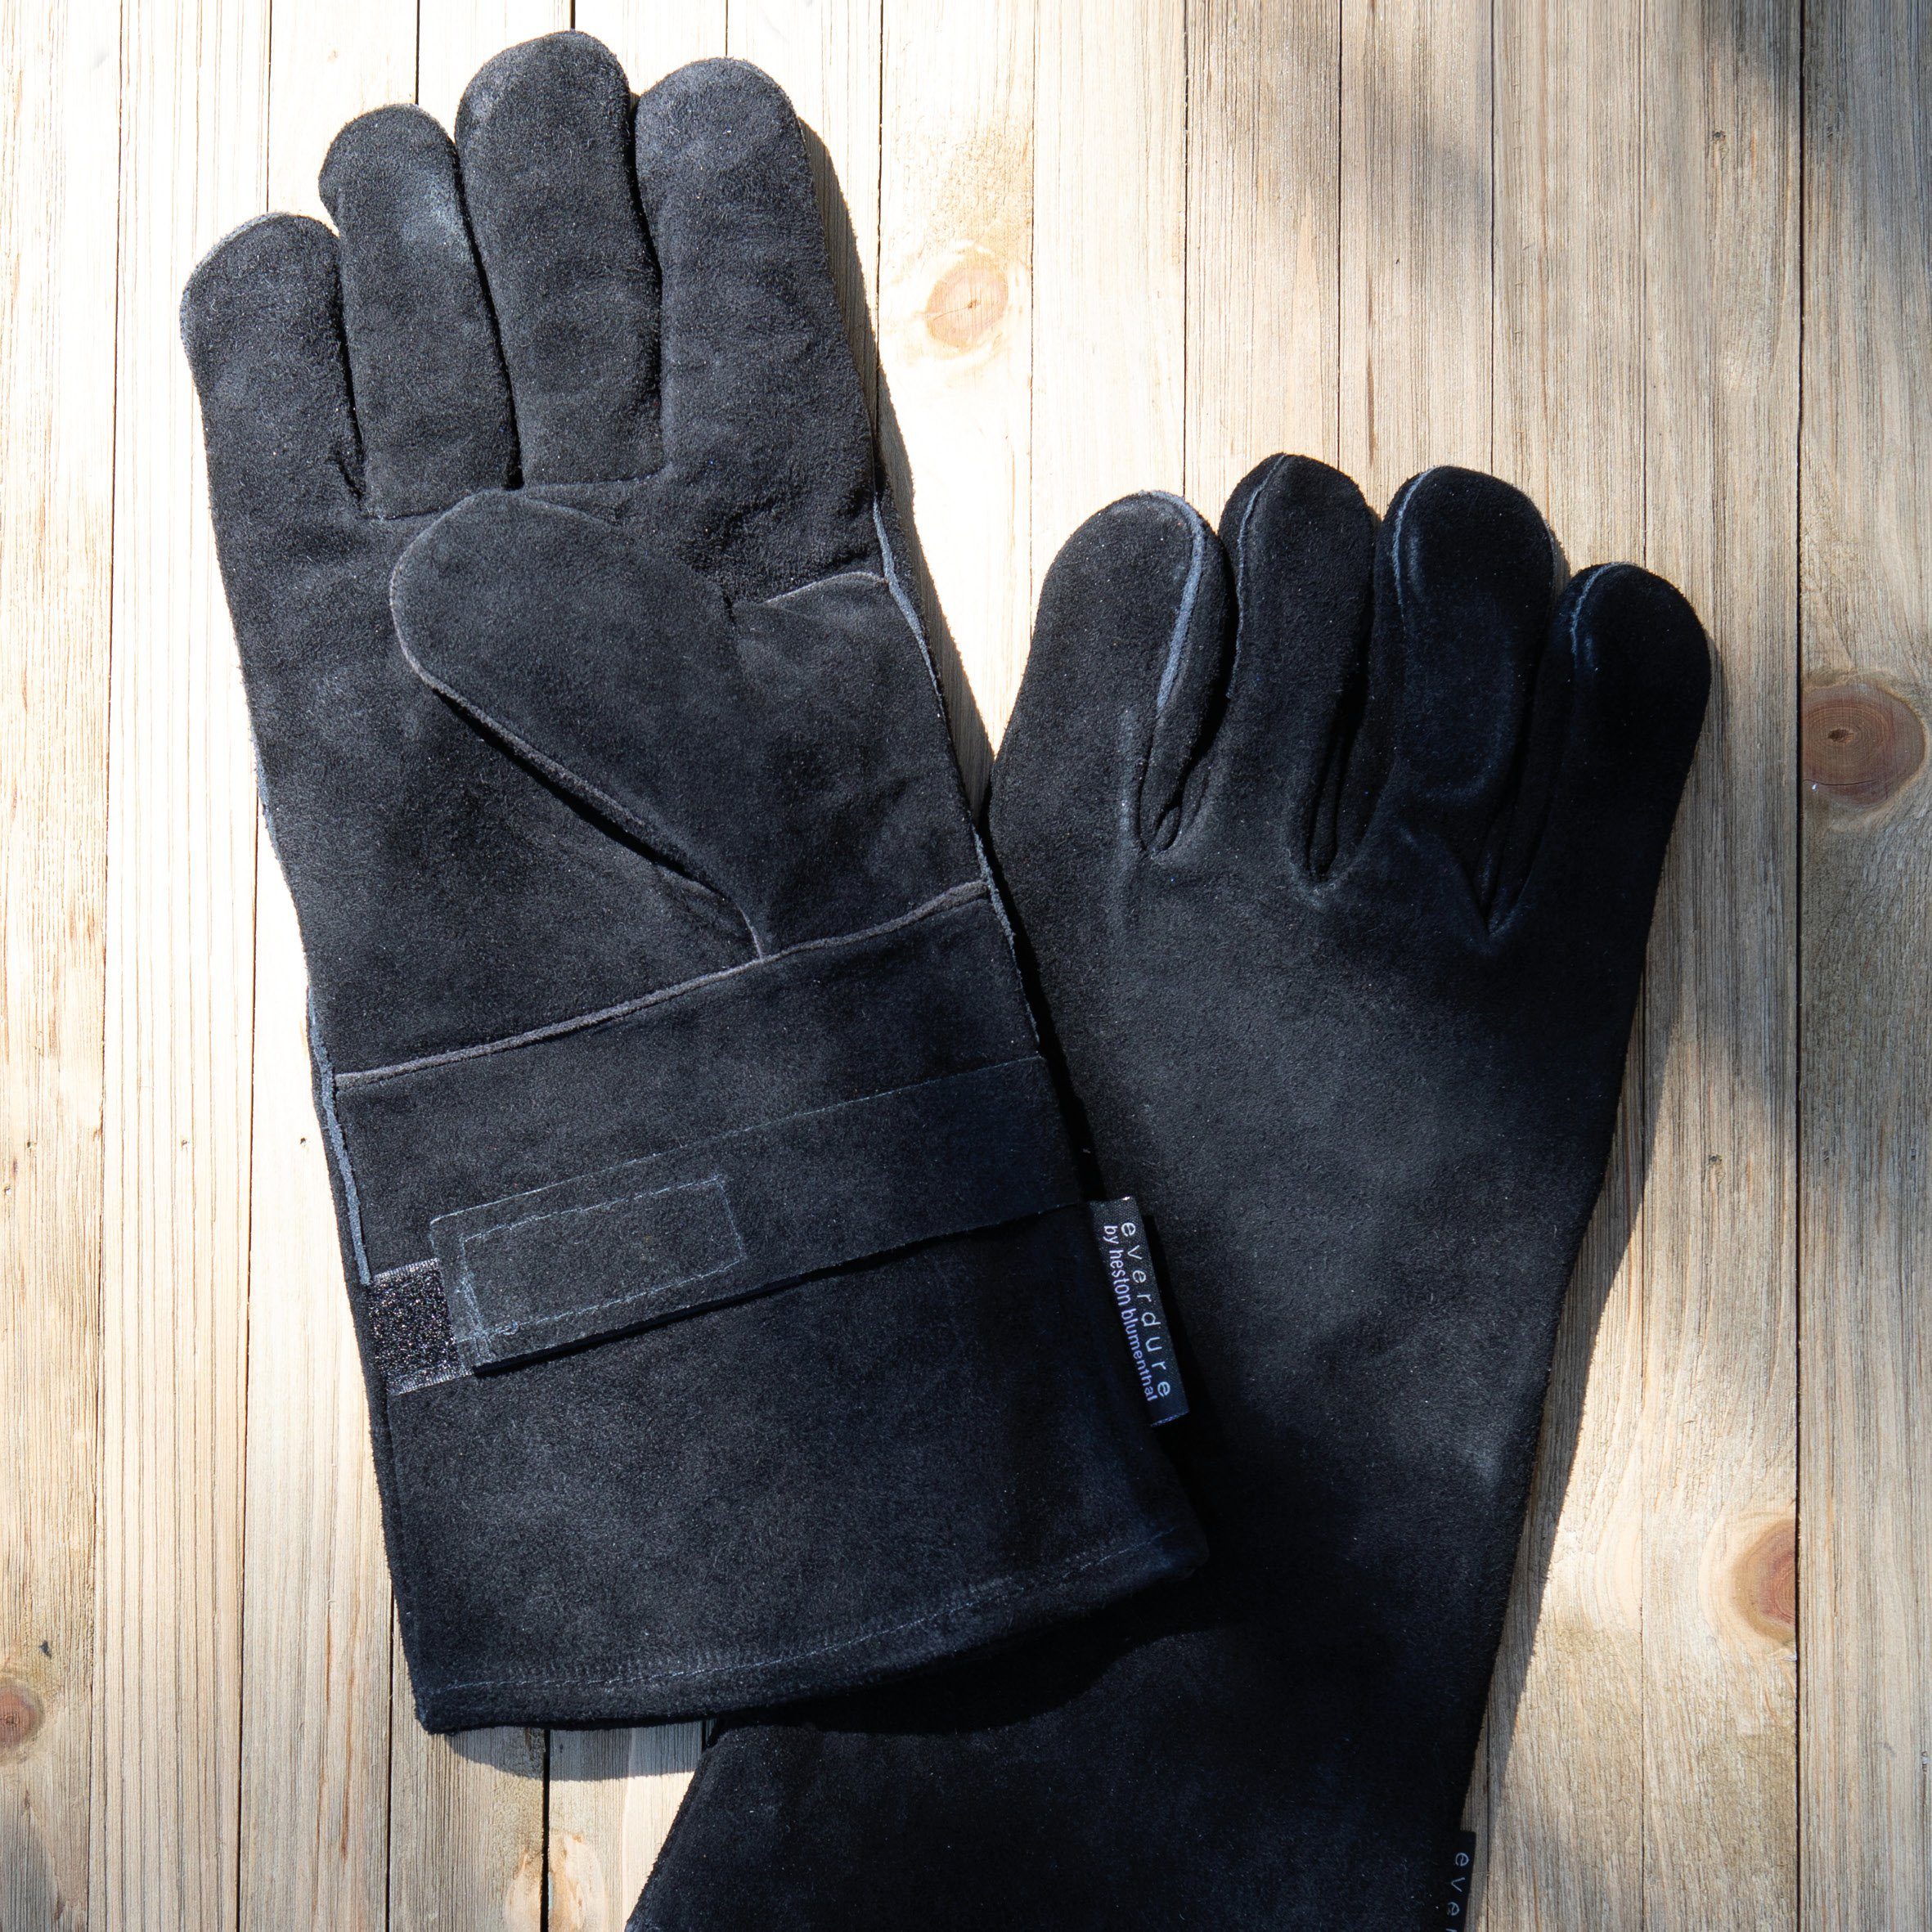 POWERHAUS24 Grillbesteck-Set Hitzeisolierende Handschuhe, Größe: Set) (Kein L/XL